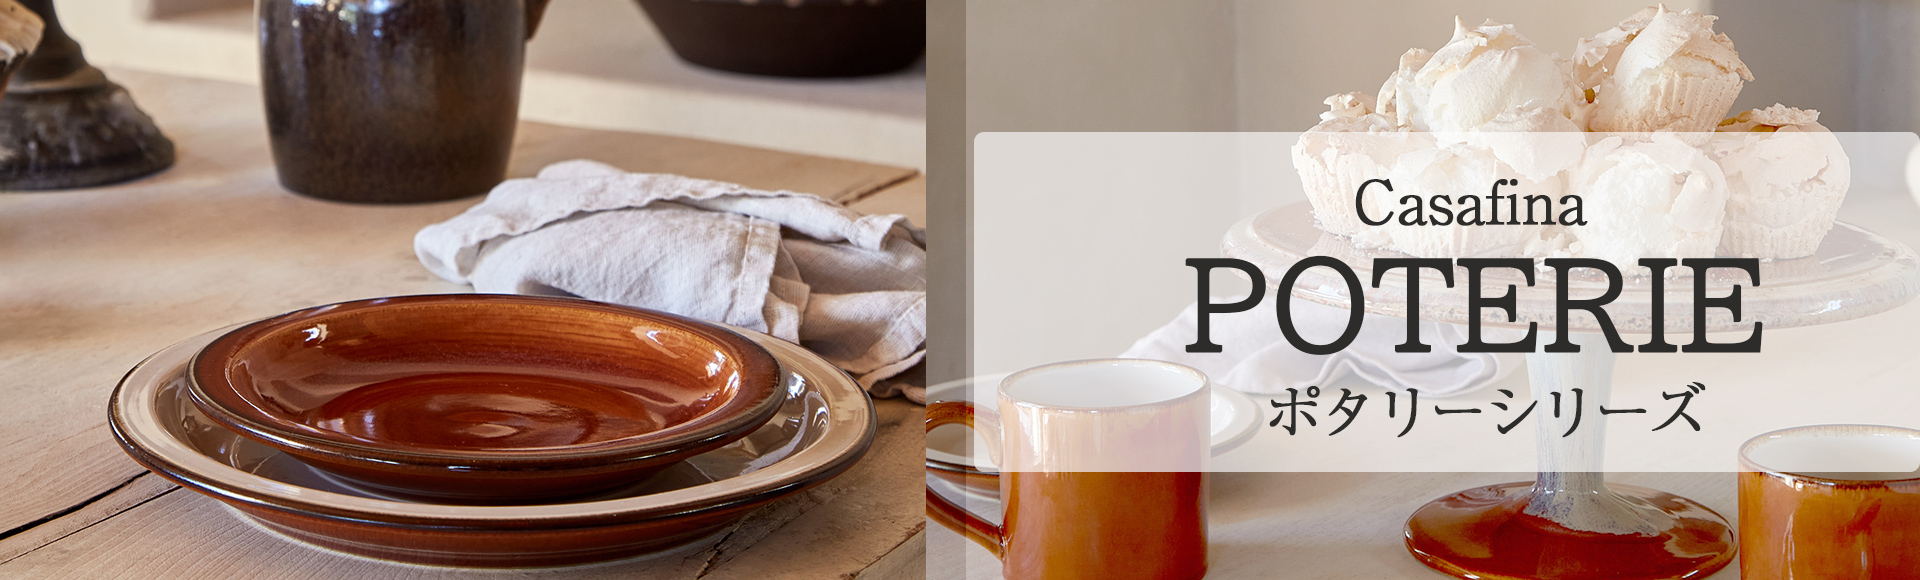 ポタリーは、フランスのヴィンテージ食器・キッチンツールの陶器 「Poterie en Grès」をモチーフにして生まれた温かみのあるポルトガル食器